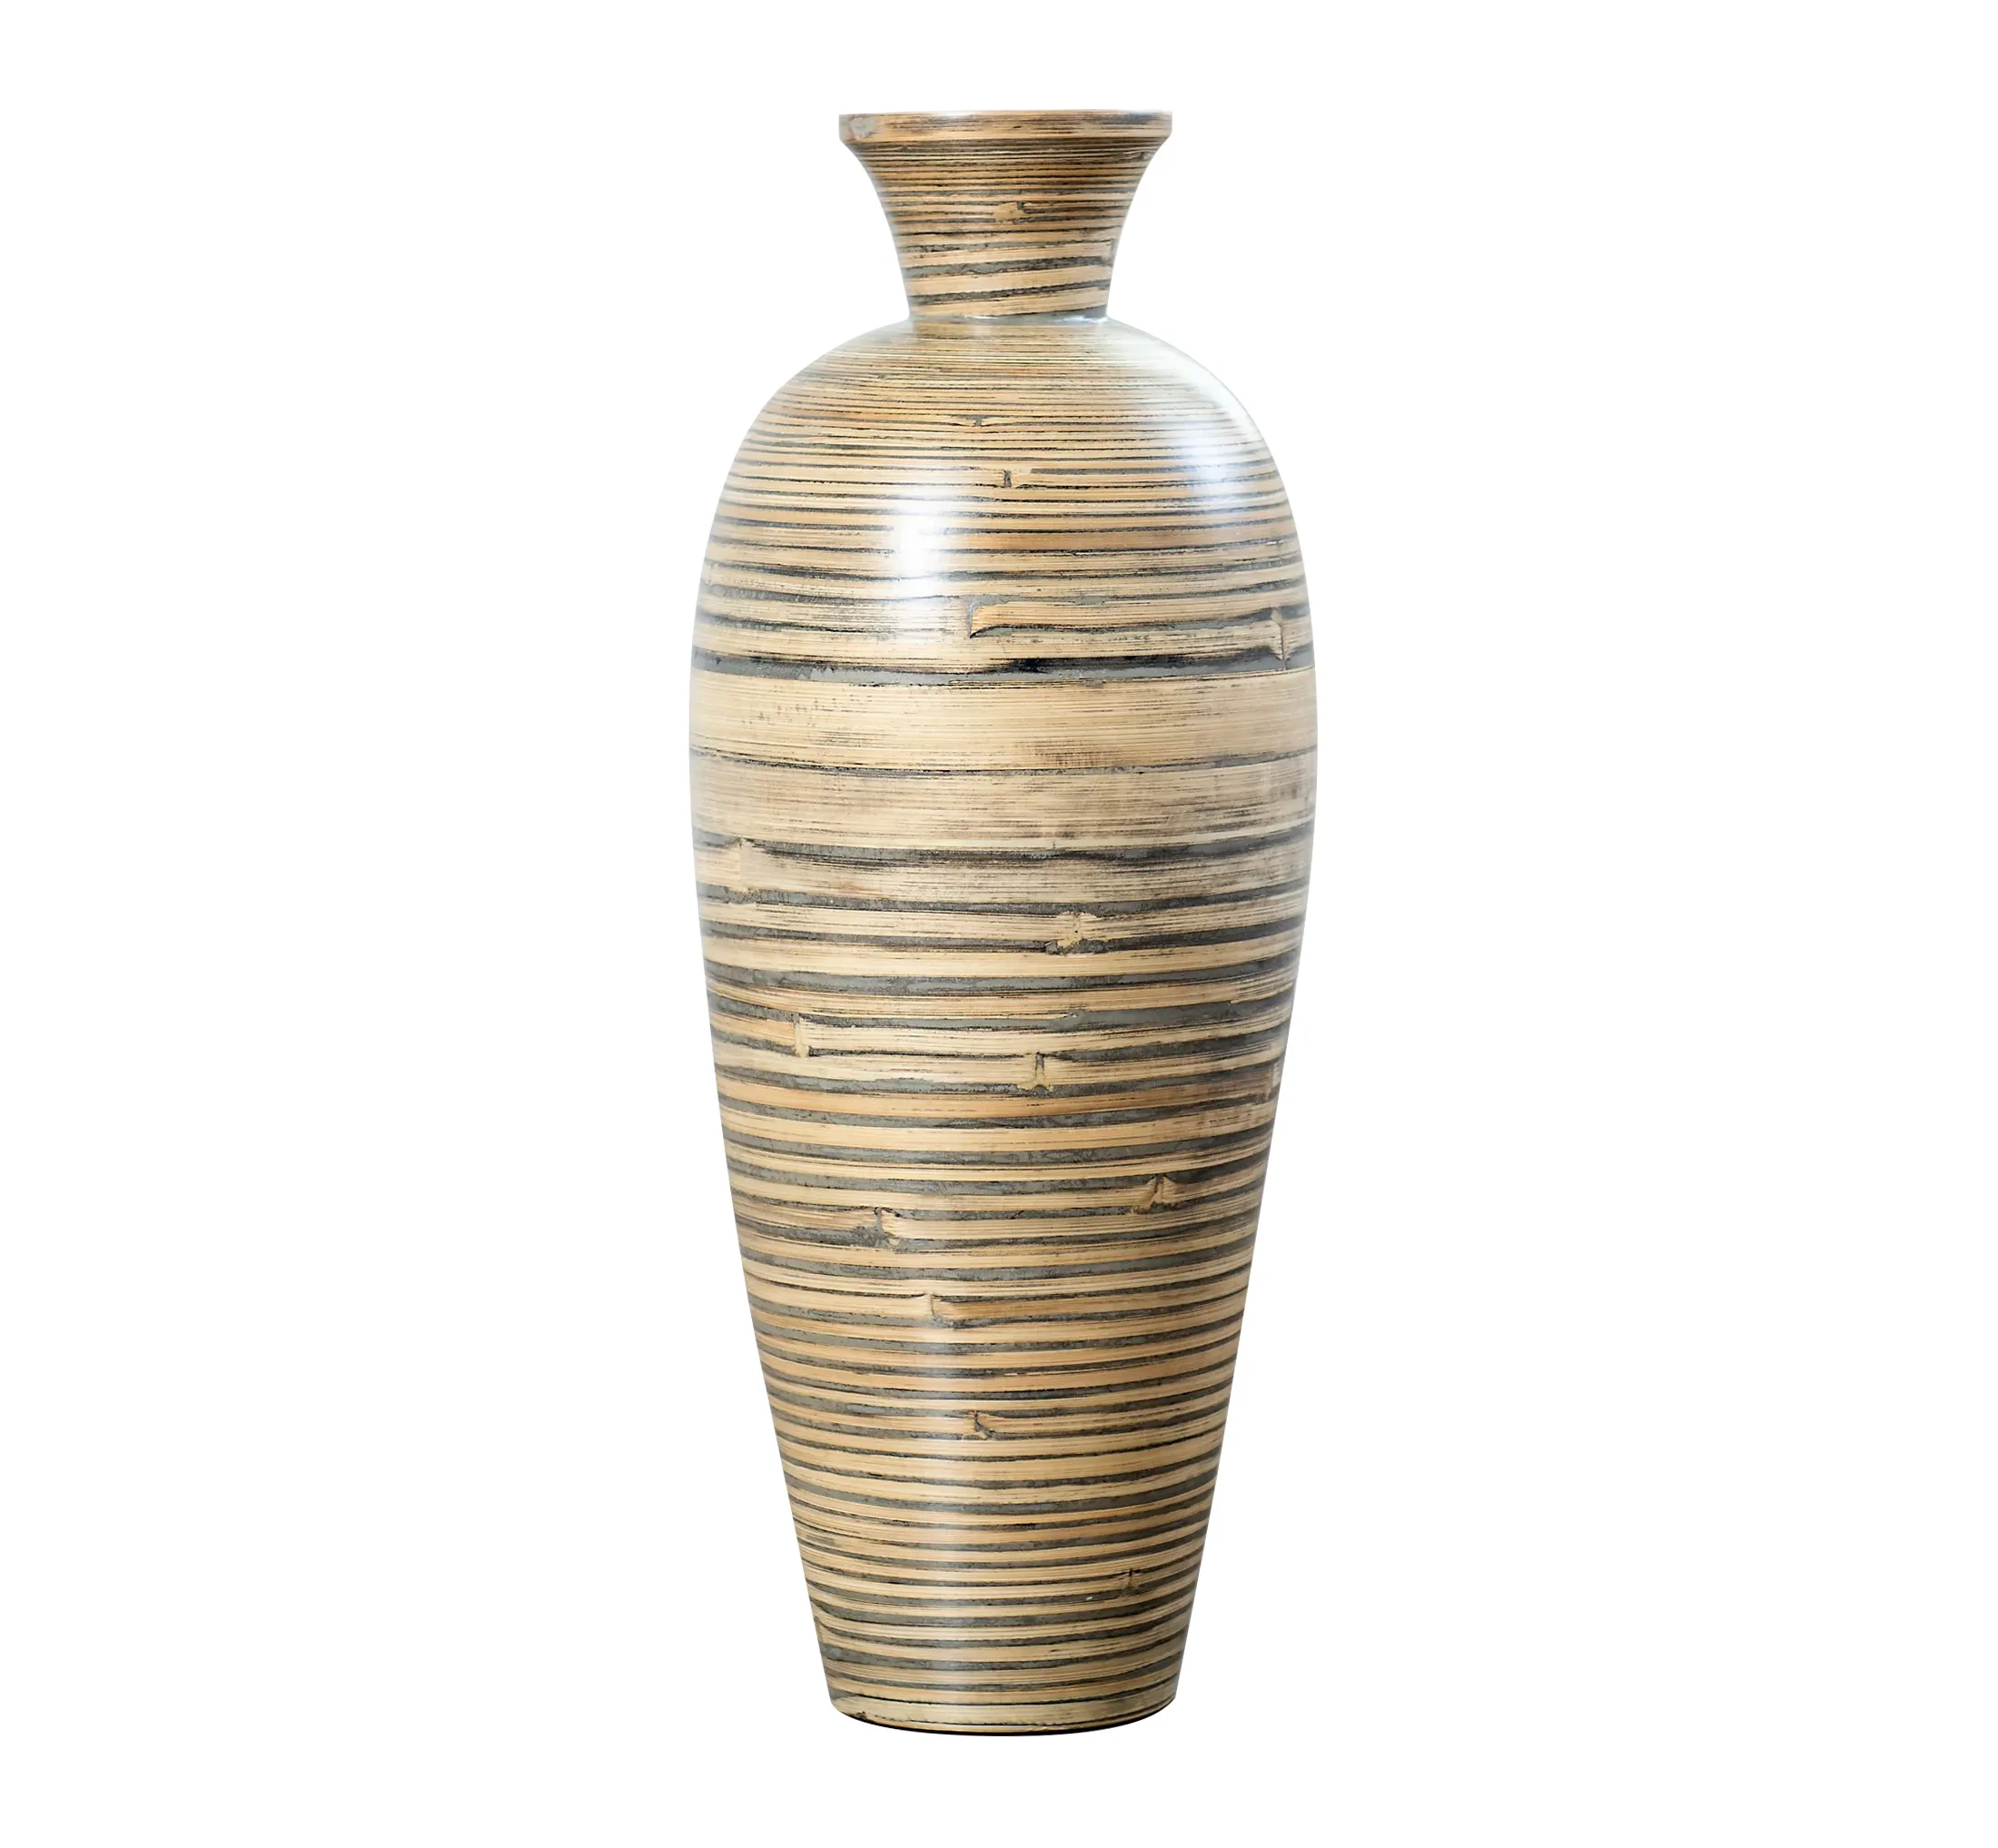 Top New Design Seagrass Spun Vasos De Flor De Bambu Vaso De Vidro Para A Decoração De Casa Durável Handwoven Dinnerware Food Table